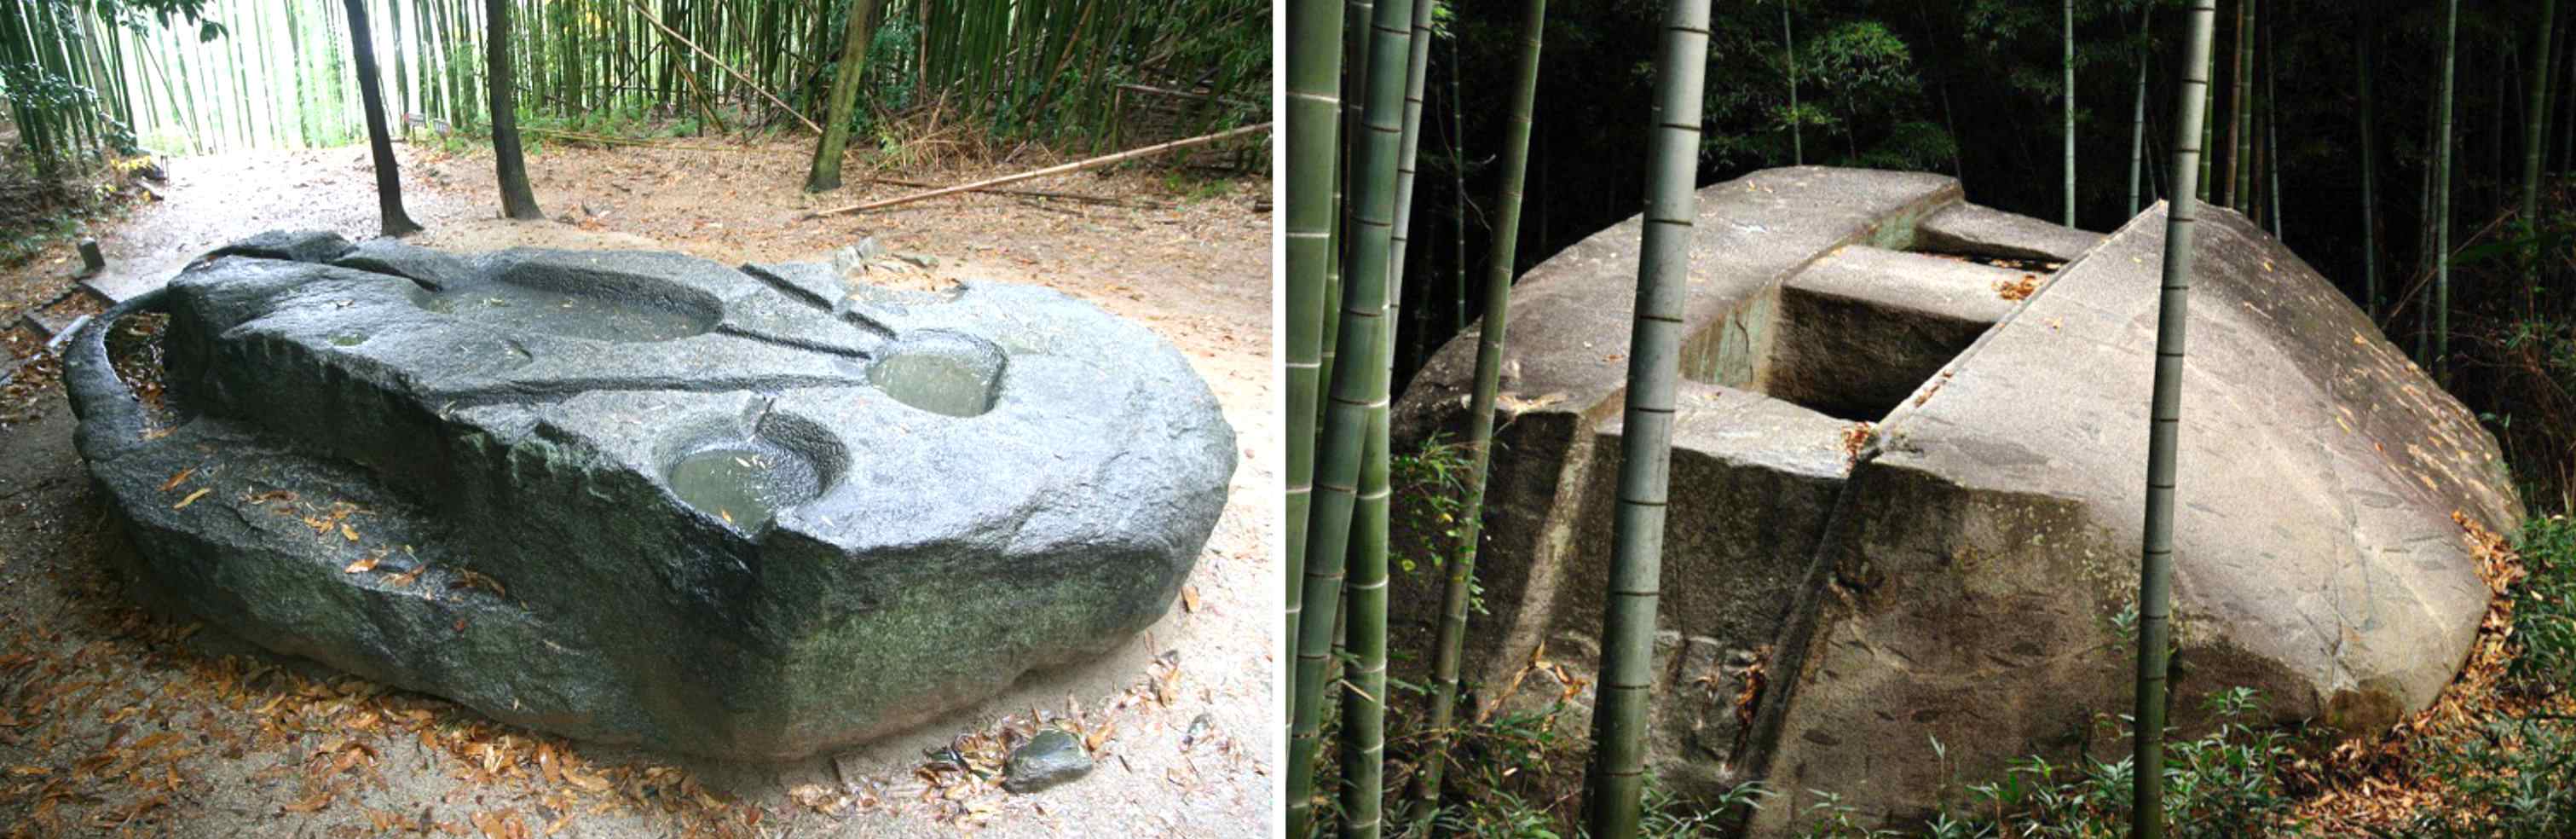 Forntida mekanismer: Byggde jättar denna japanska megalit som vägde hundratals ton? 3